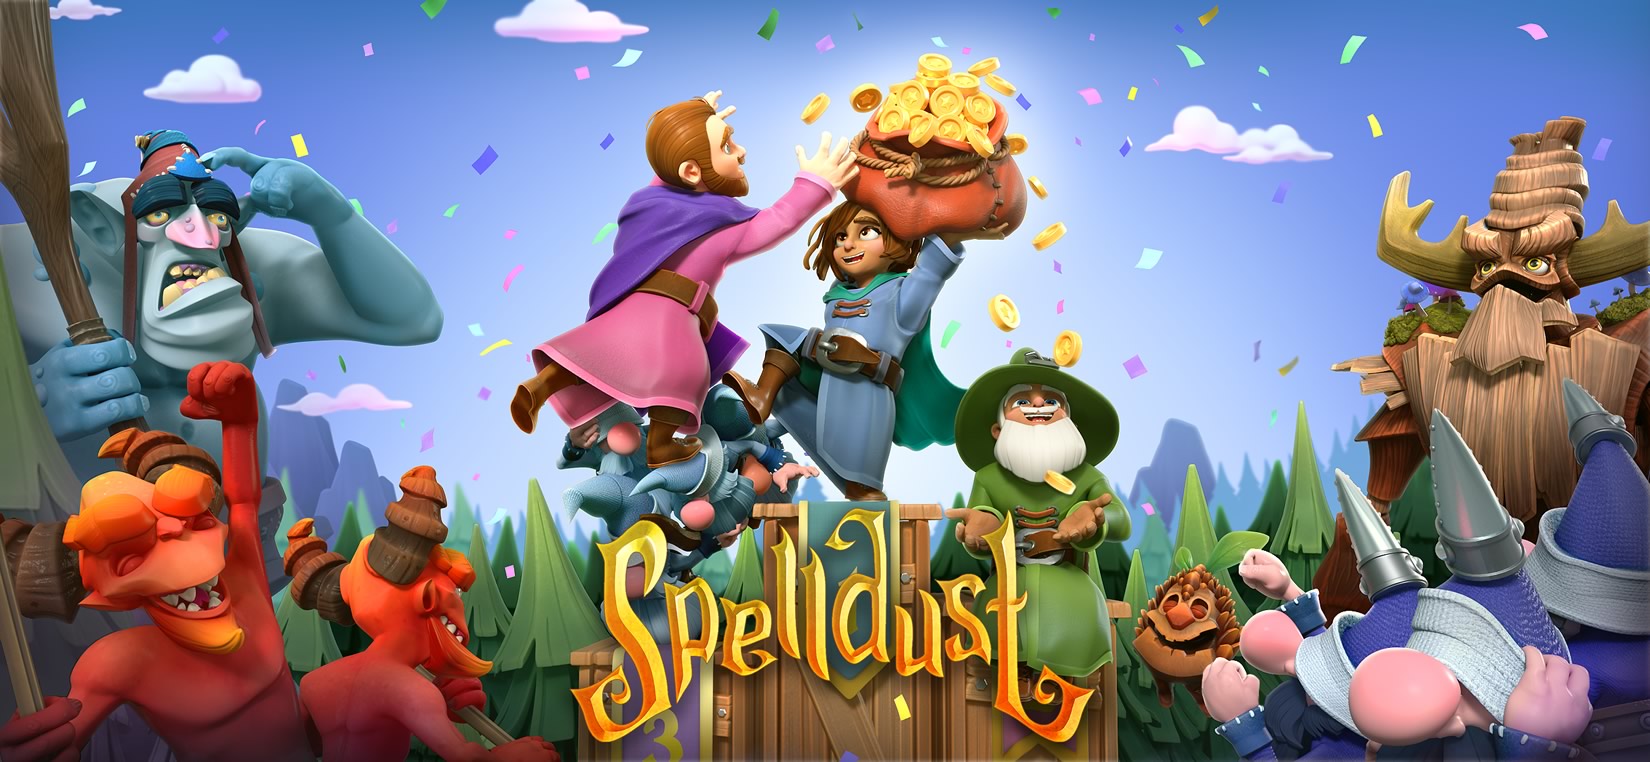 Spelldust | Game será lançado para iOS e Android no dia 27 de abril